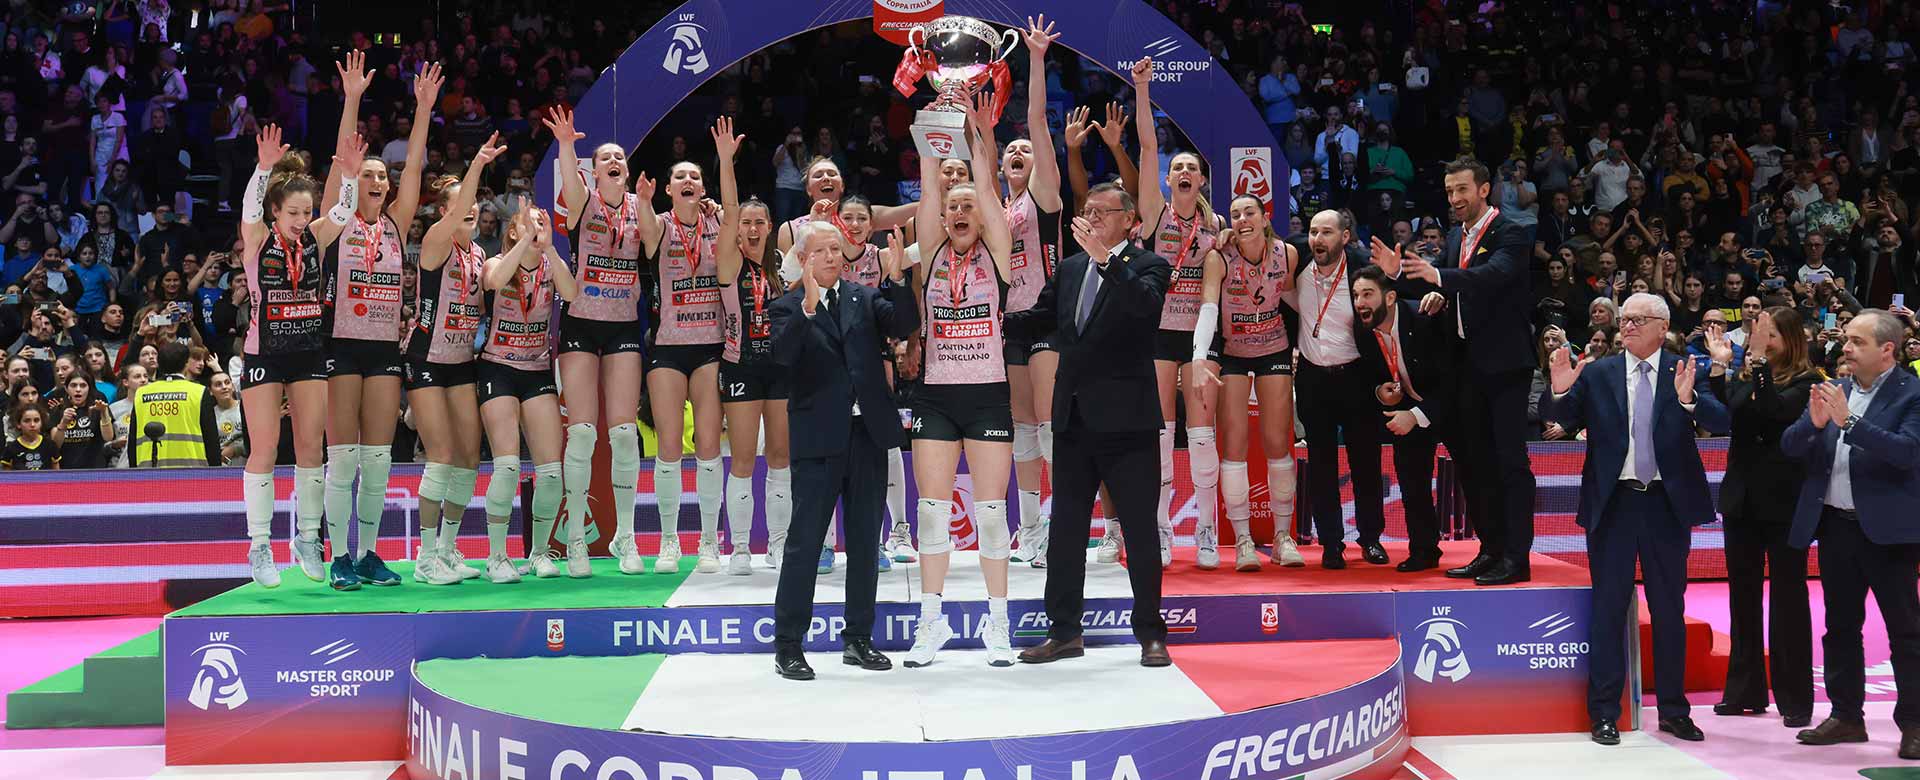 La Prosecco Doc Imoco Conegliano alza al cielo il trofeo della Coppa Italia Frecciarossa di volley ©Rubin - Zani/LVF